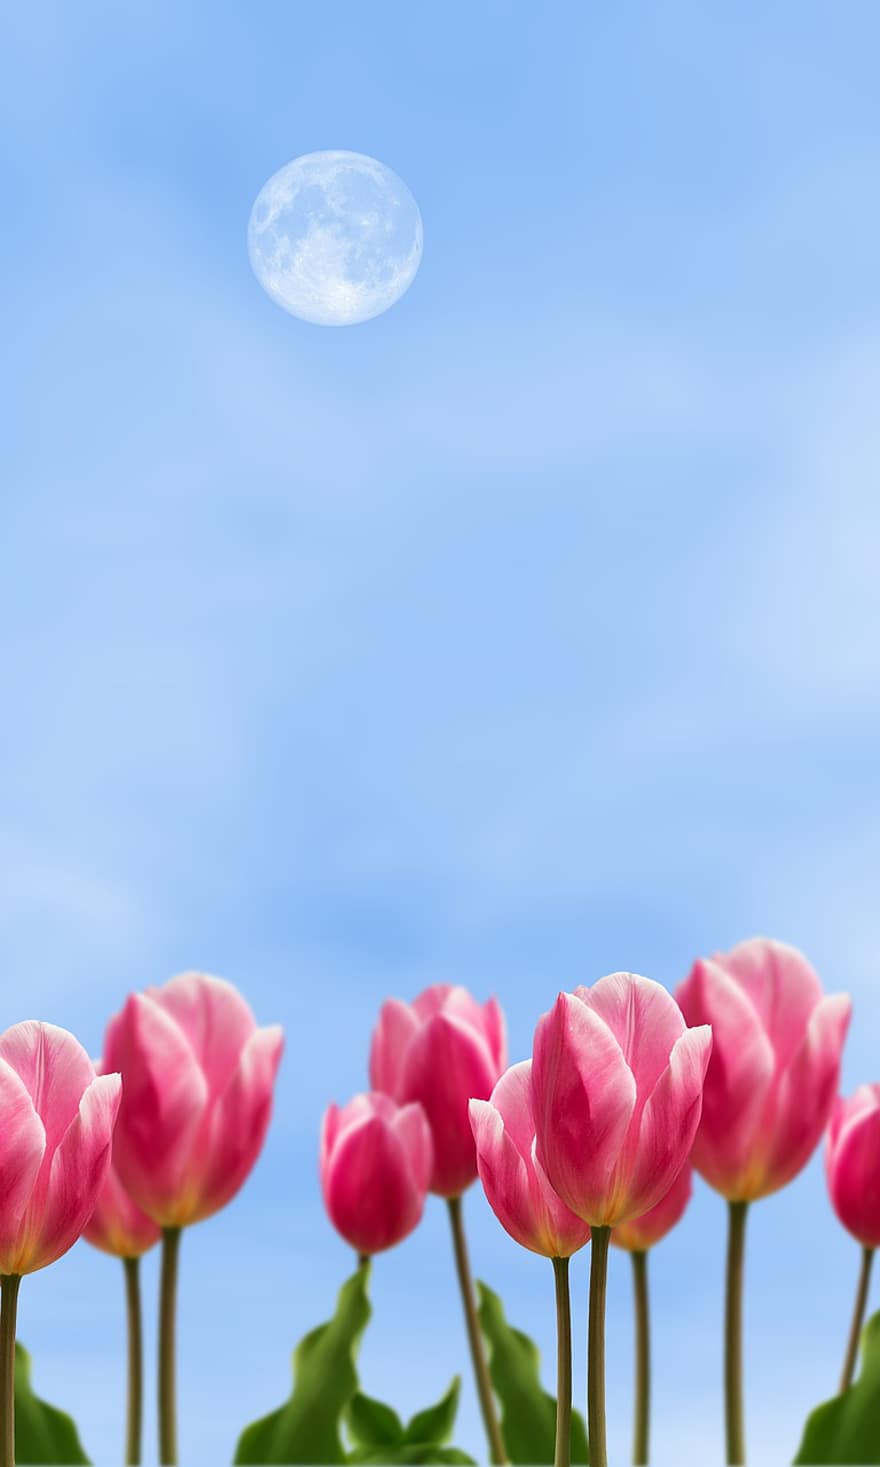 hoa tulip hồng, những bông hoa màu hồng, Thiên nhiên, phong cảnh, Hoa tulip, những bông hoa, bông hoa, mùa hè, cây, hoa tulip, màu xanh da trời